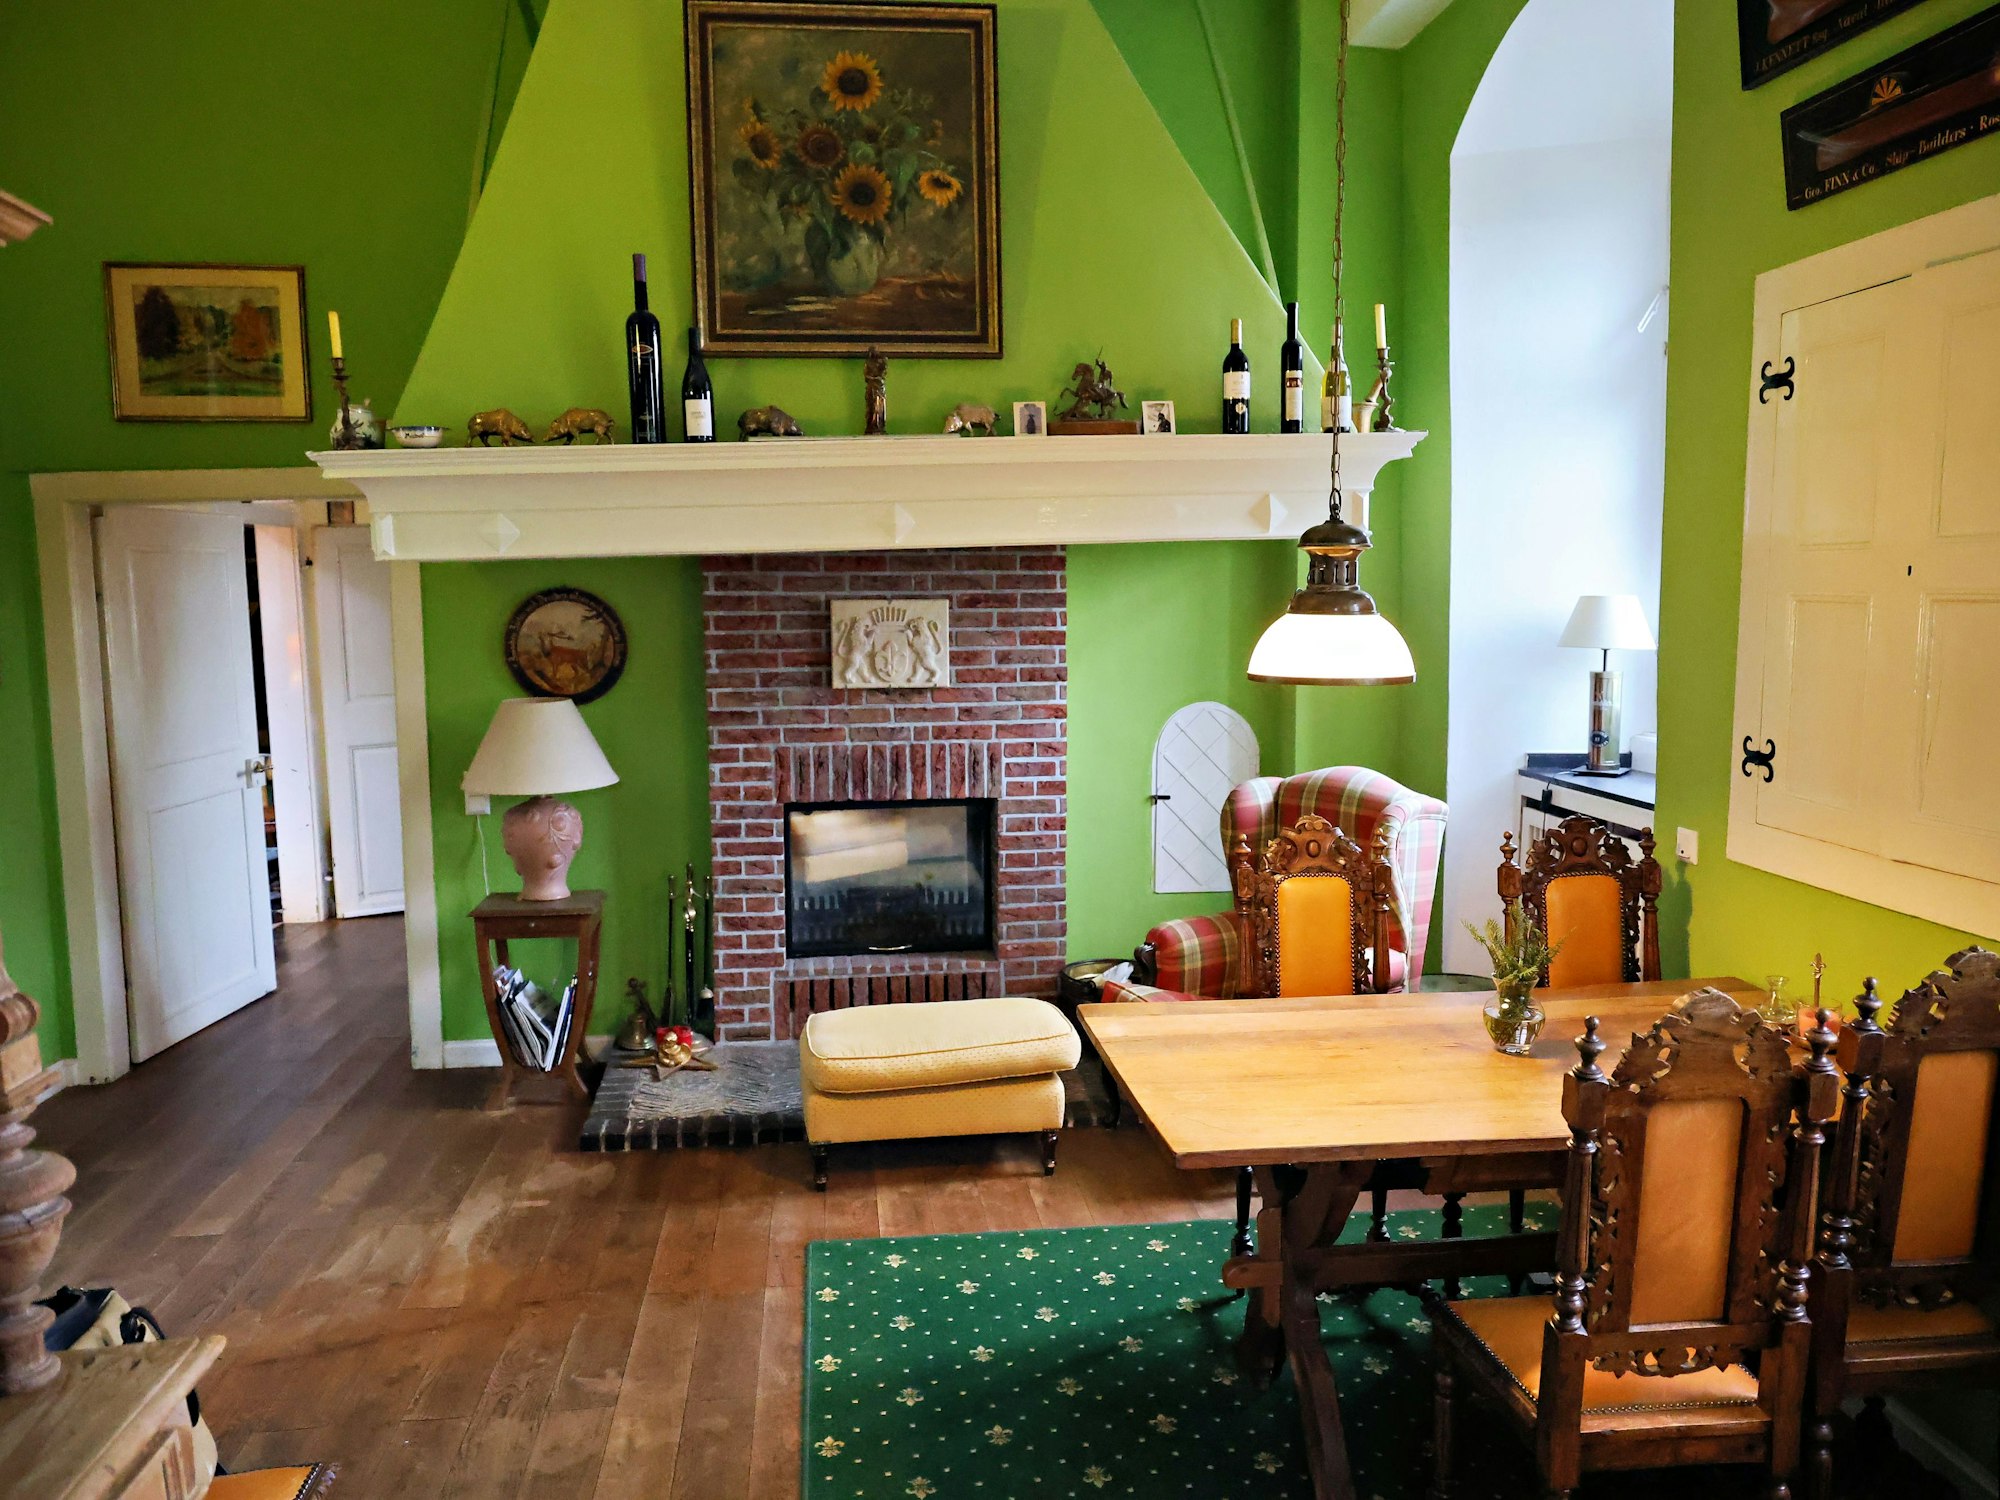 Das Zimmer mit dem gemauerten offenen Kamin ist grün tapeziert.